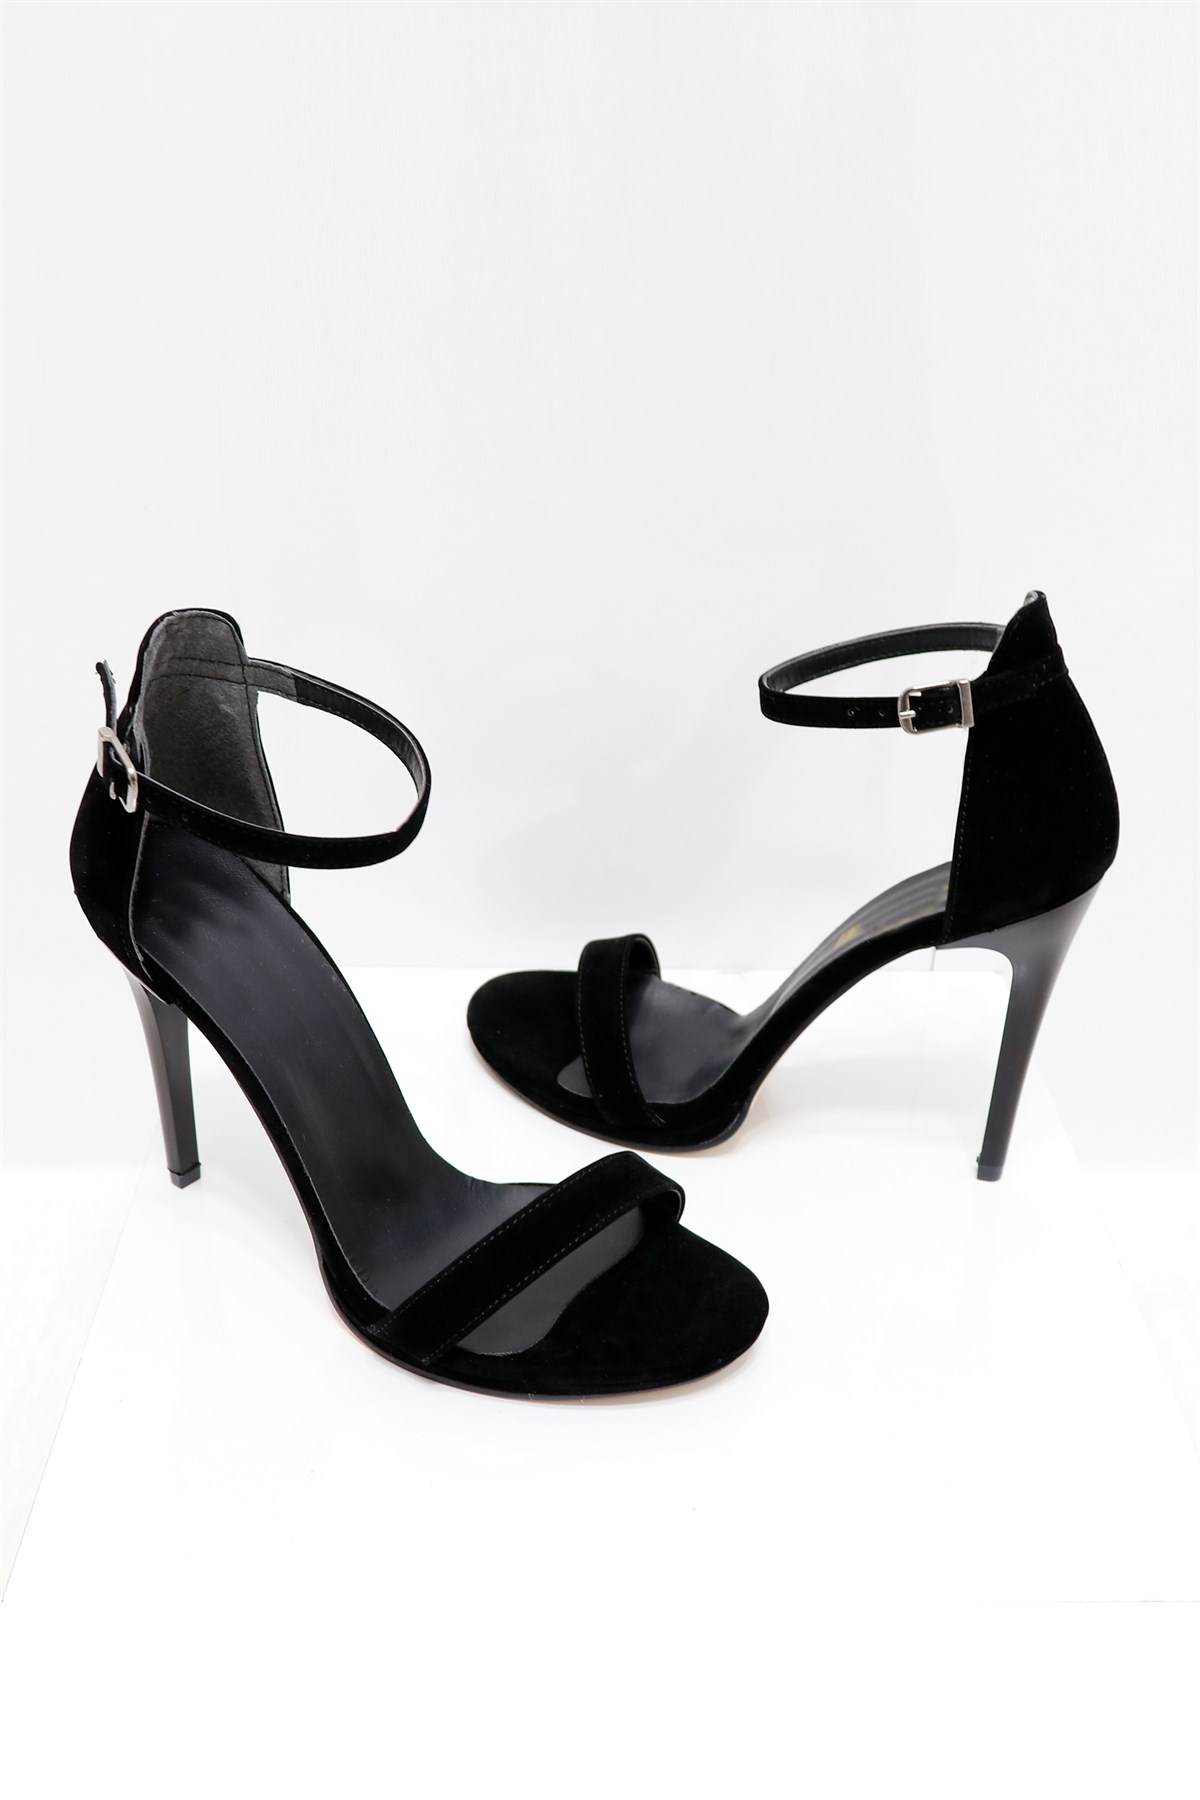 Siyah süet İnce Topuklu Tek Bant Sandalet 733 Fiyatı ve Modelleri